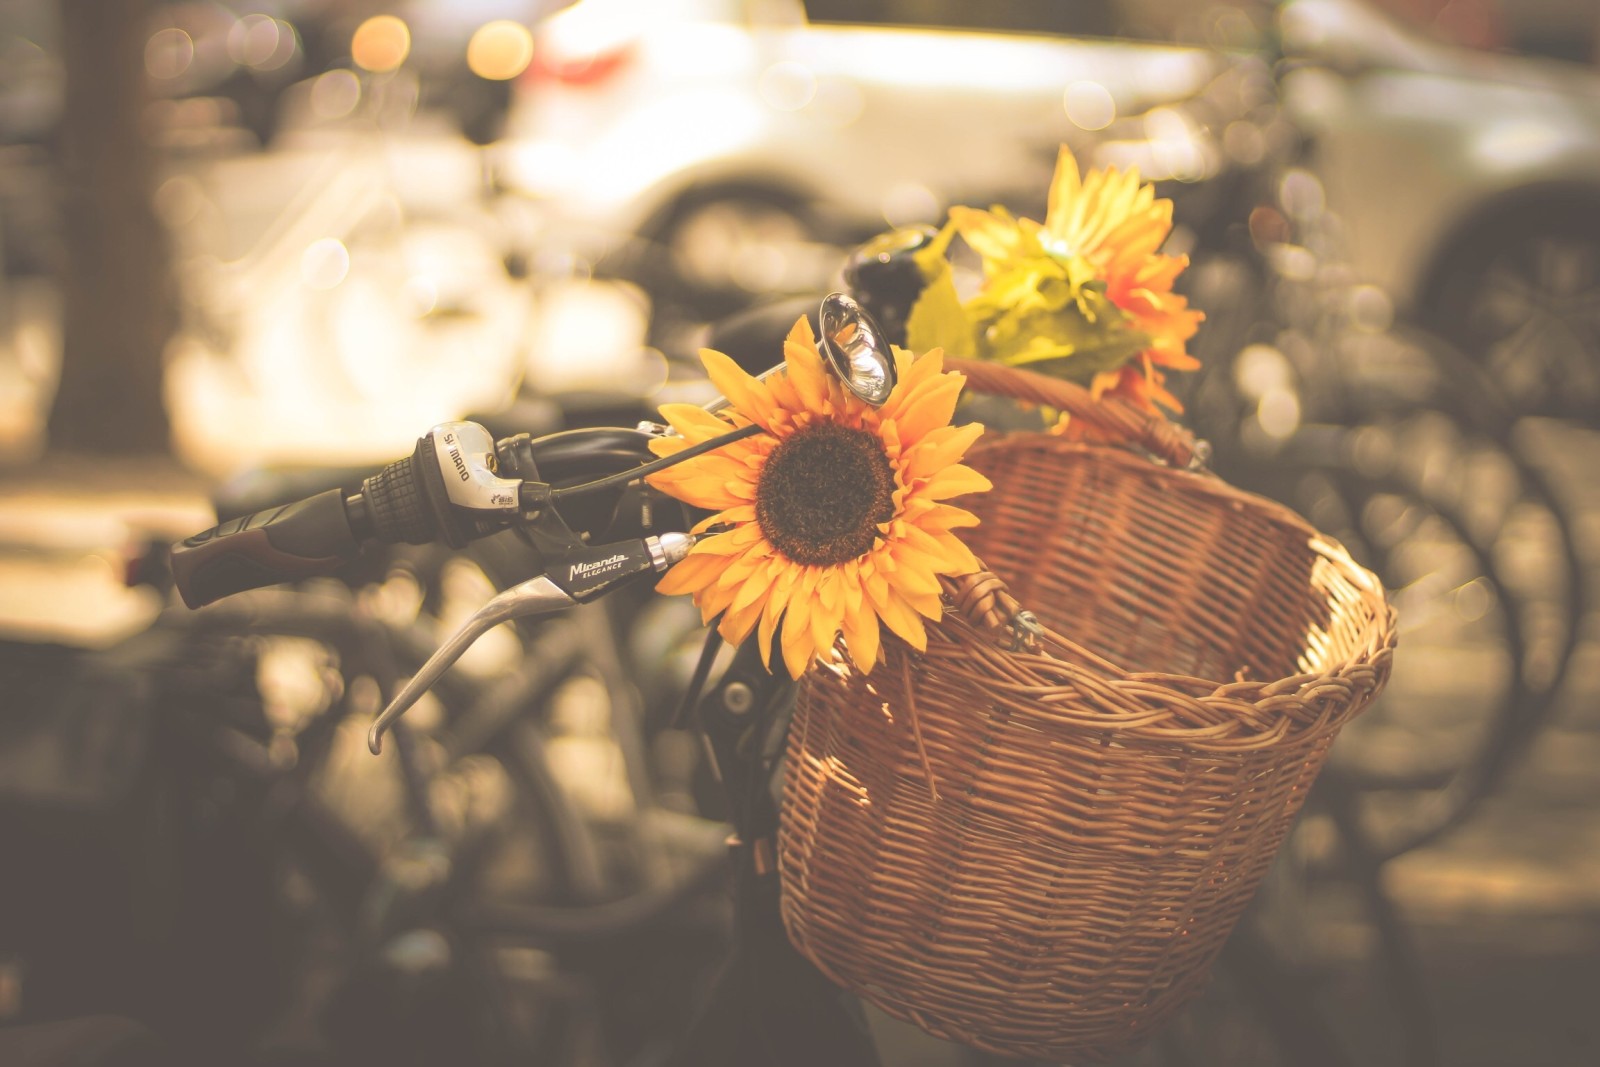 kota, Mesin, sepeda, keranjang, tanduk, bunga matahari, sepeda